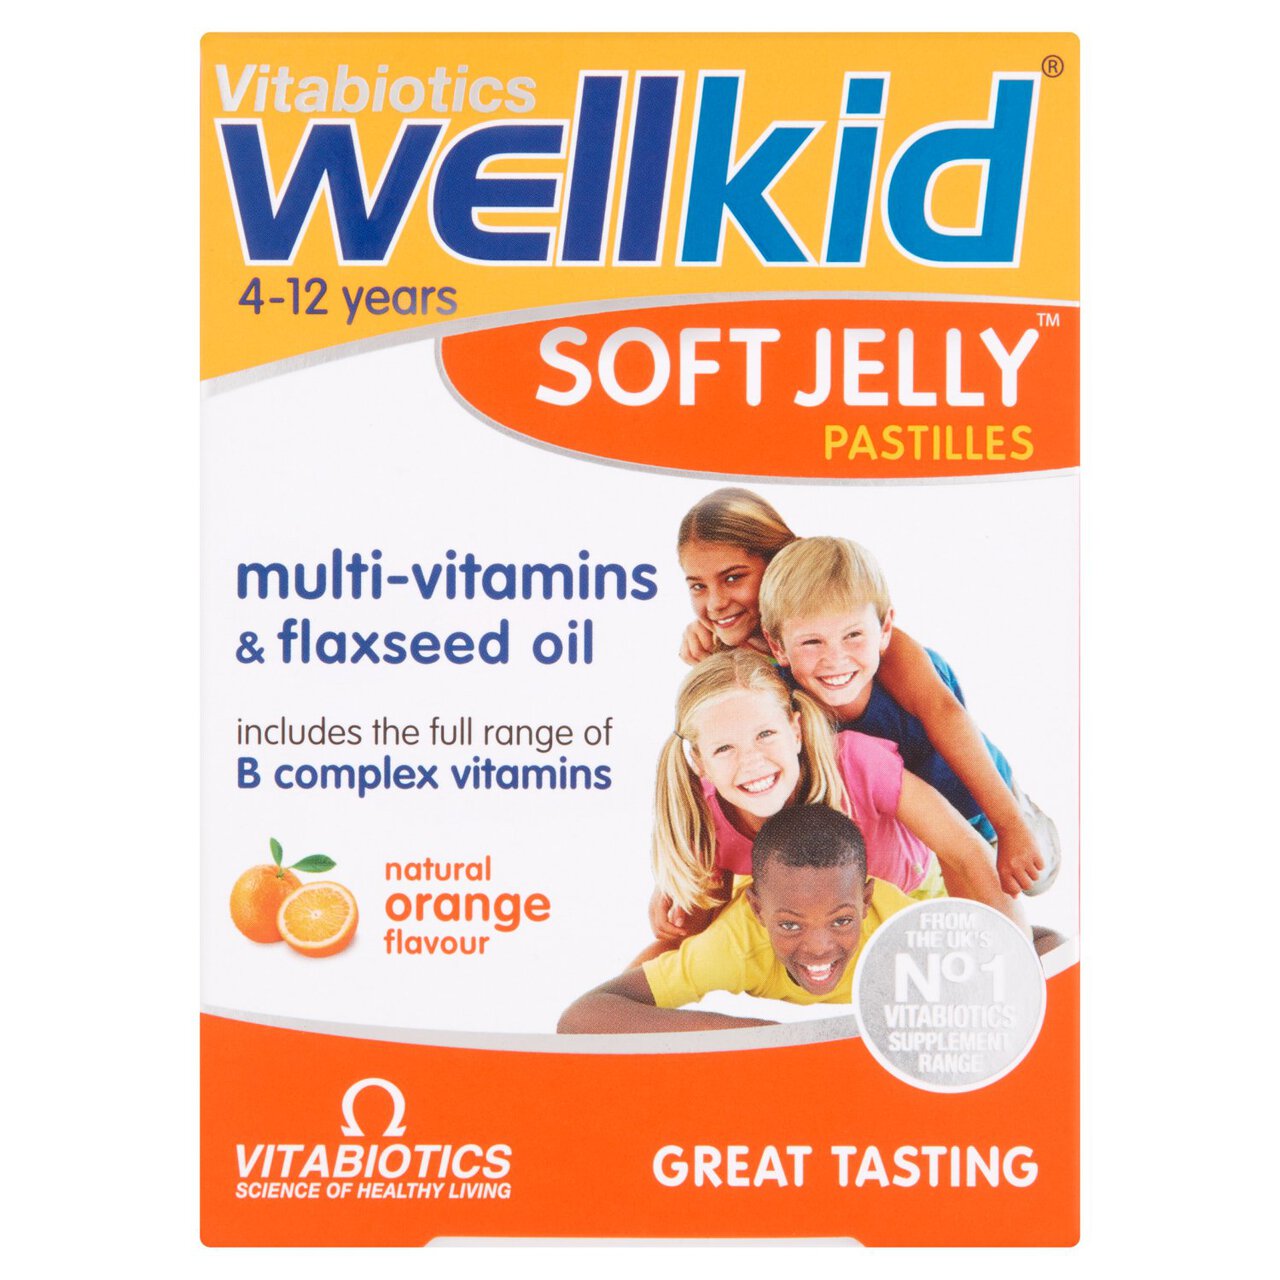 Vitabiotics Wellkid Multivitamins & Flaxseed Oil Orange Jelly Pastilles 30 per pack